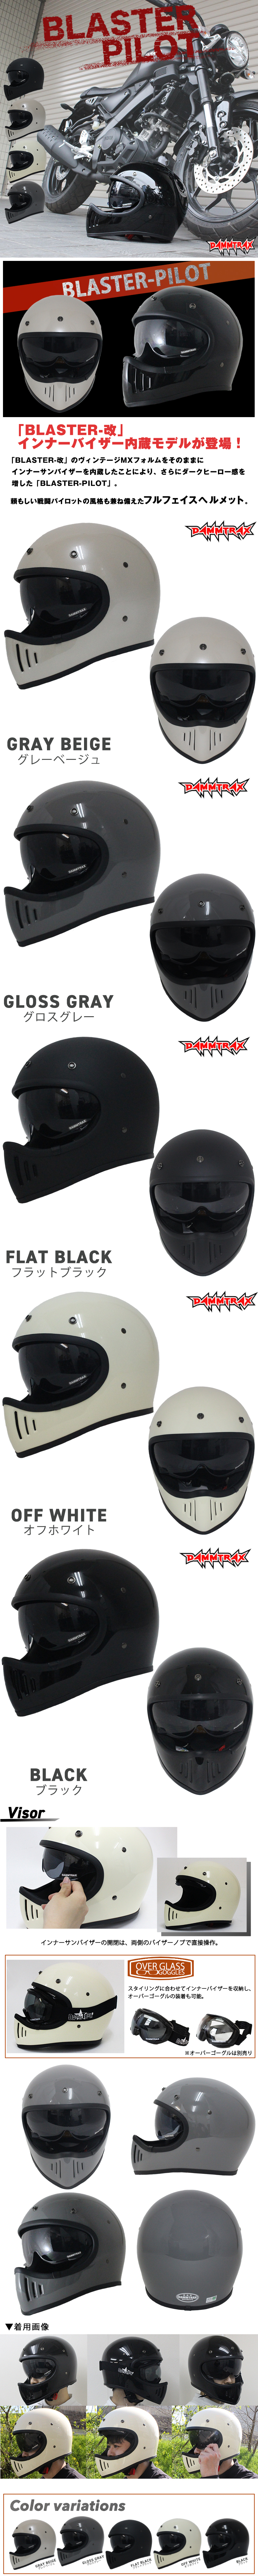 ダムトラックス/ブラスターヘルメット/フルフェイスヘルメット/バイクヘルメット/DAMMTRAX/BLASTER/メンズヘルメット/バイク /フルェイス/ ヘルメット/ダムトラックスブラスター /ヘルメット